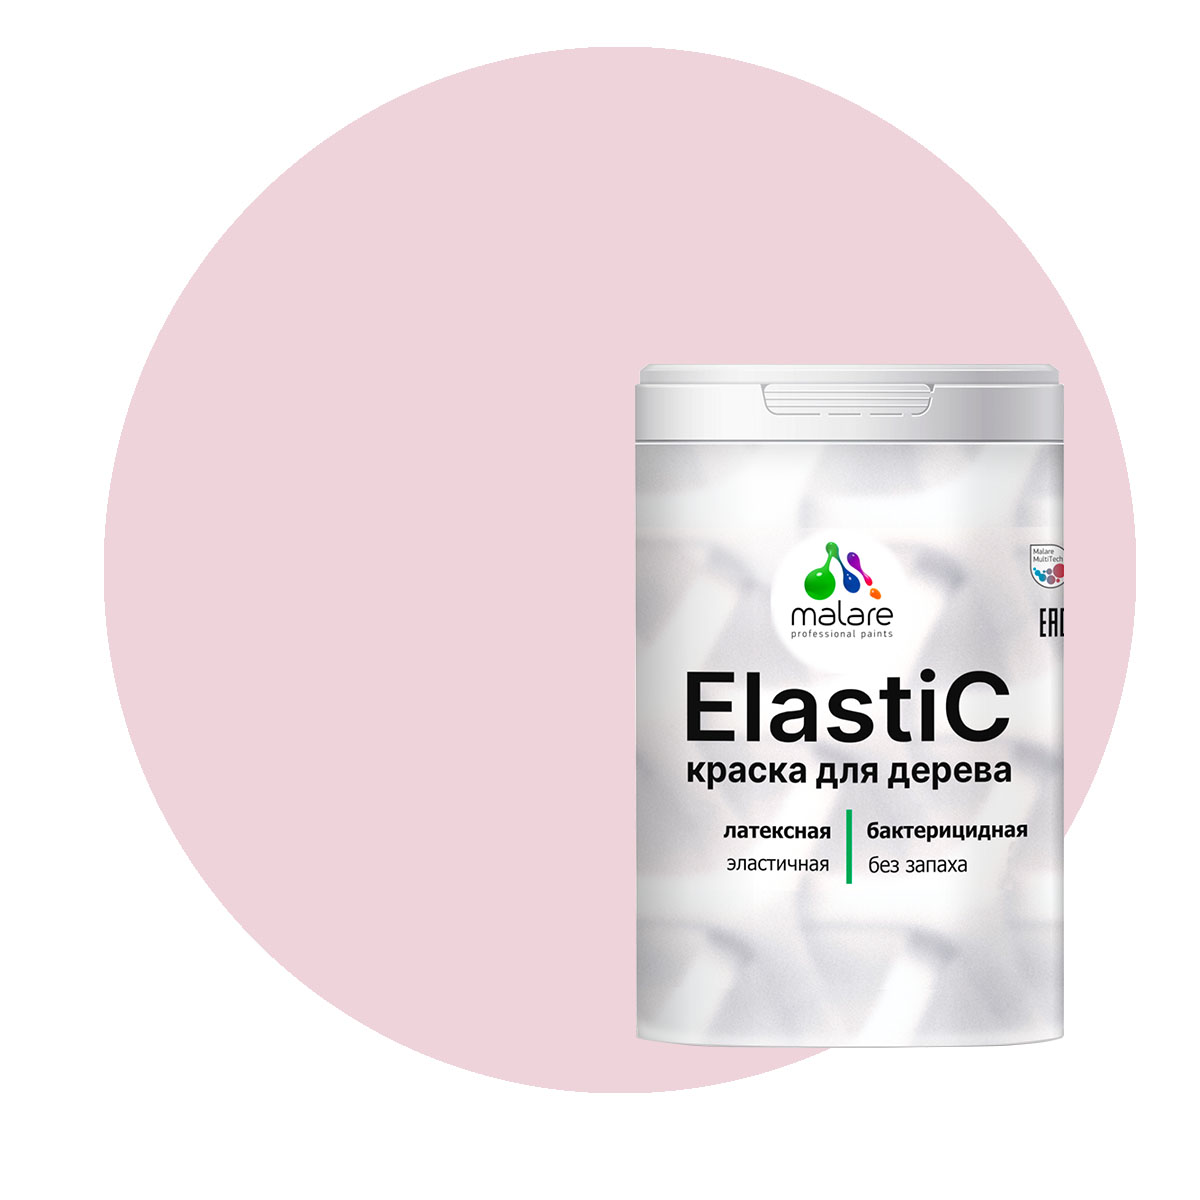 фото Краска malare elastic для деревянных поверхностей, бледно-розовый, 2 кг.